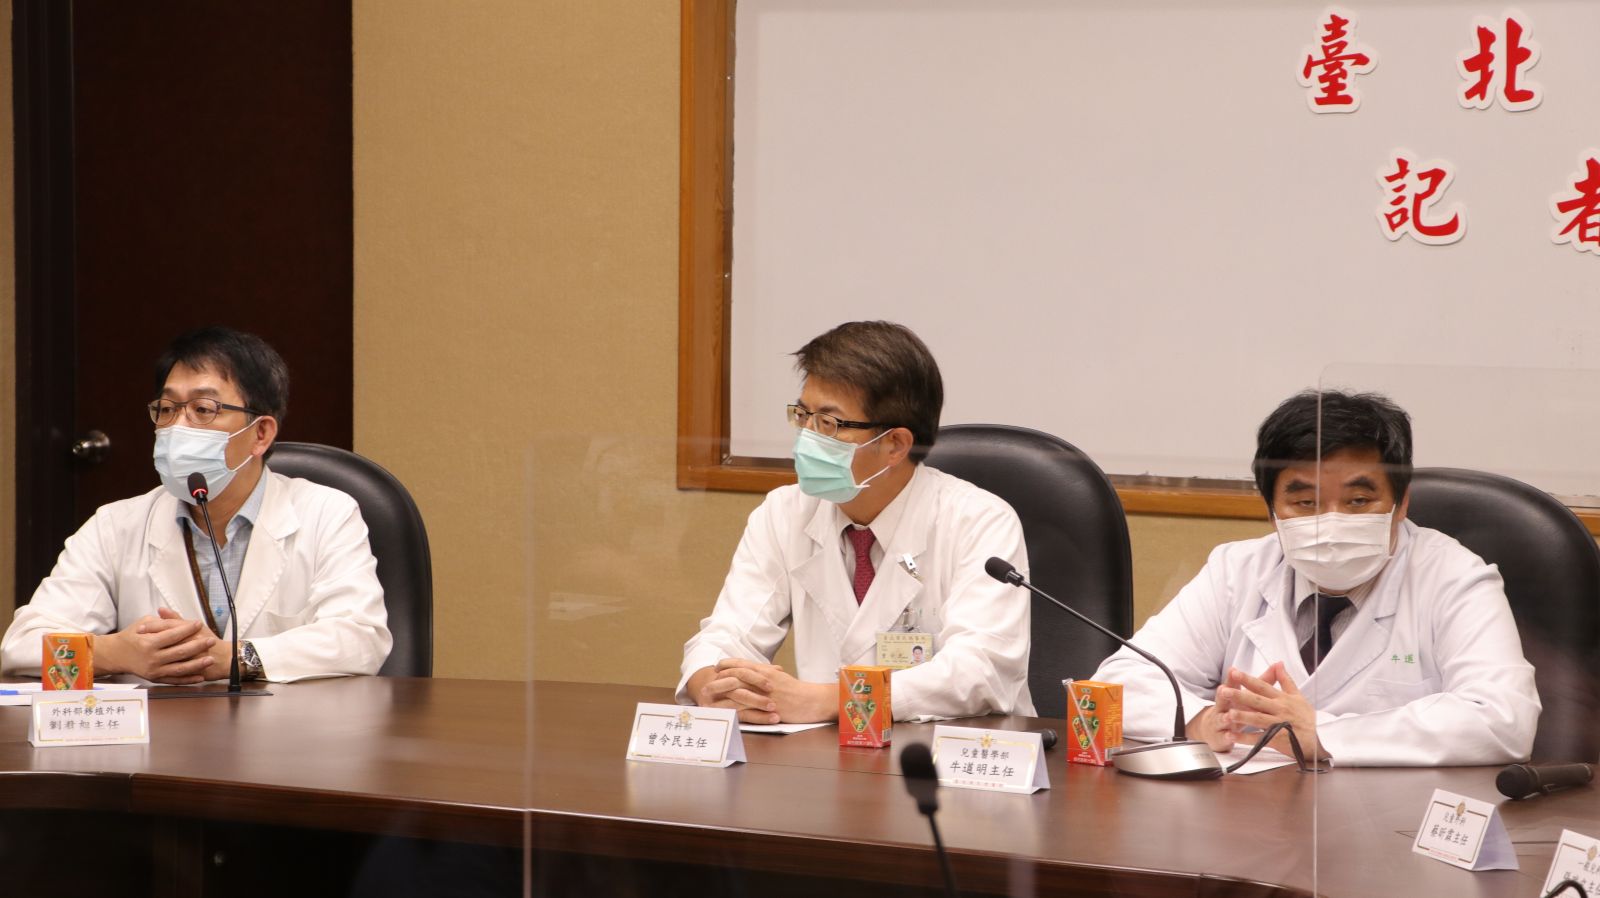 由臺北榮總移植外科劉君恕 主任(左一)表示：「台灣器官的分配原則，99.999%可能會2顆腎臟給一個大人，常常因為這樣小朋友得不到腎臟」。